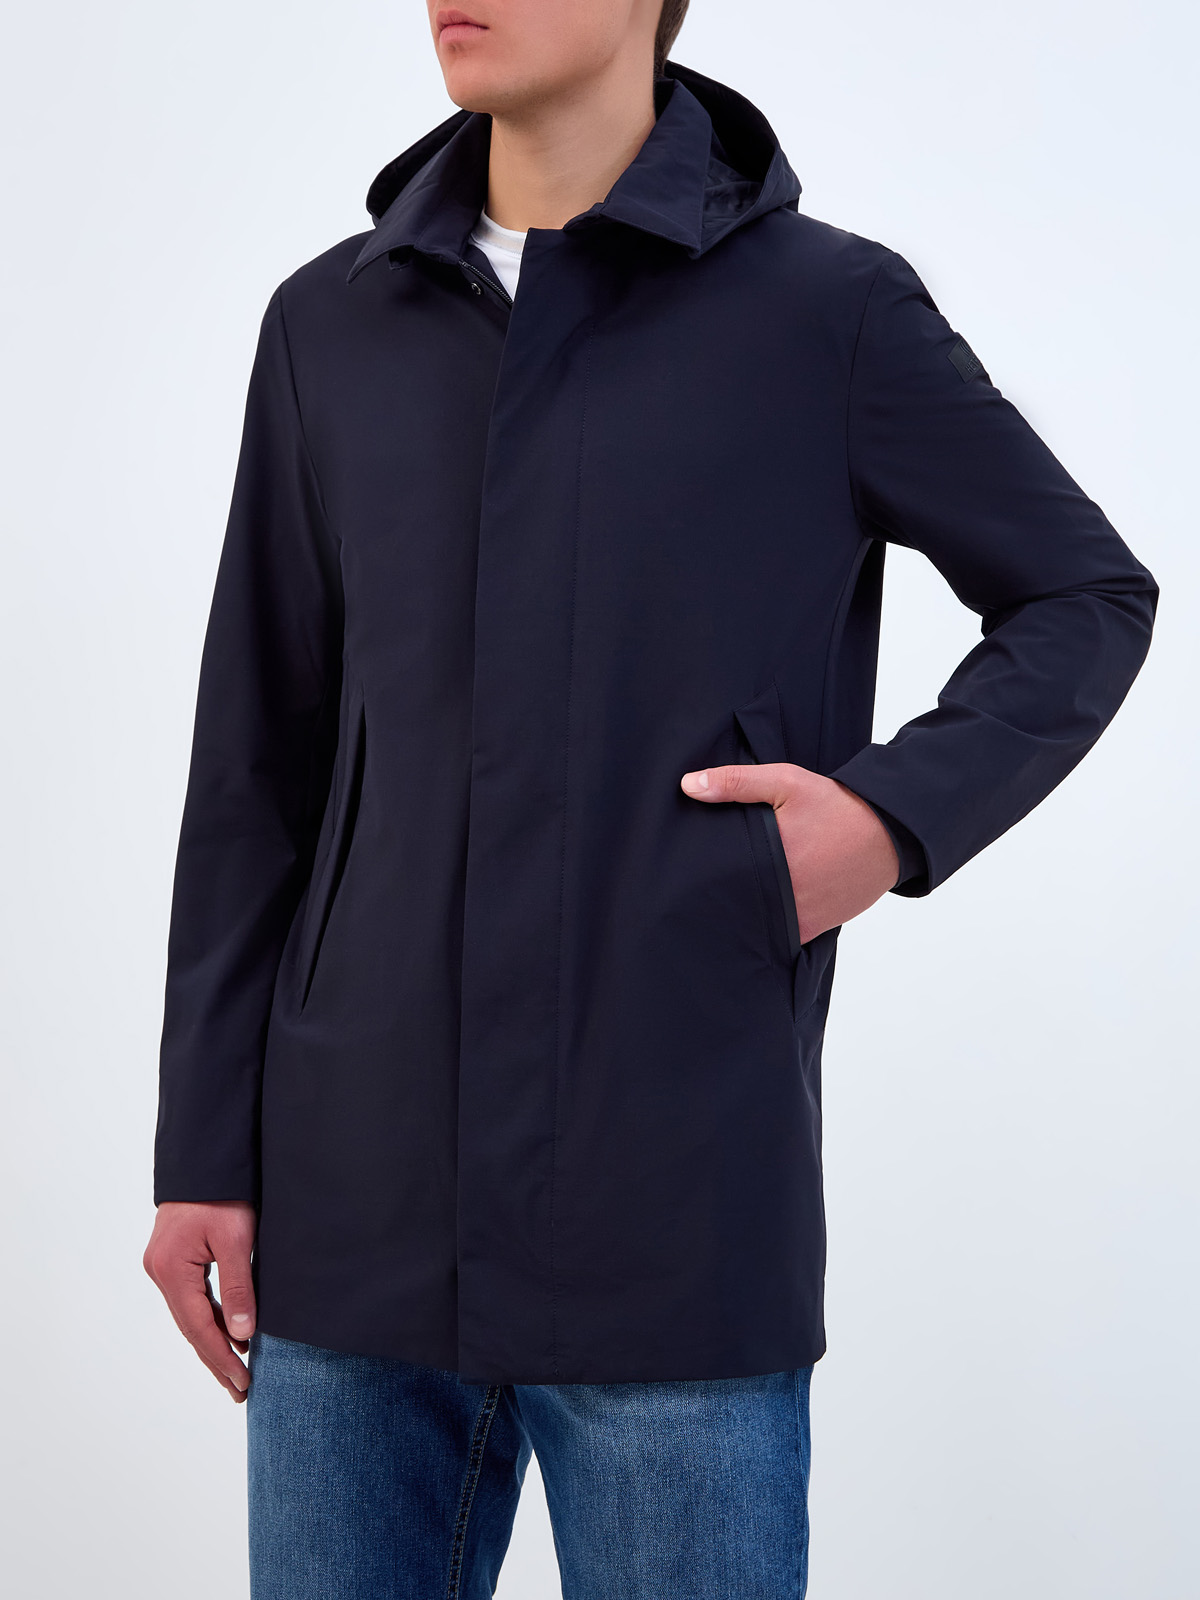 Куртка с классическим отложным воротом и съемным капюшоном на молнии HETREGO, цвет синий, размер L;XL;2XL;3XL;4XL;5XL - фото 3